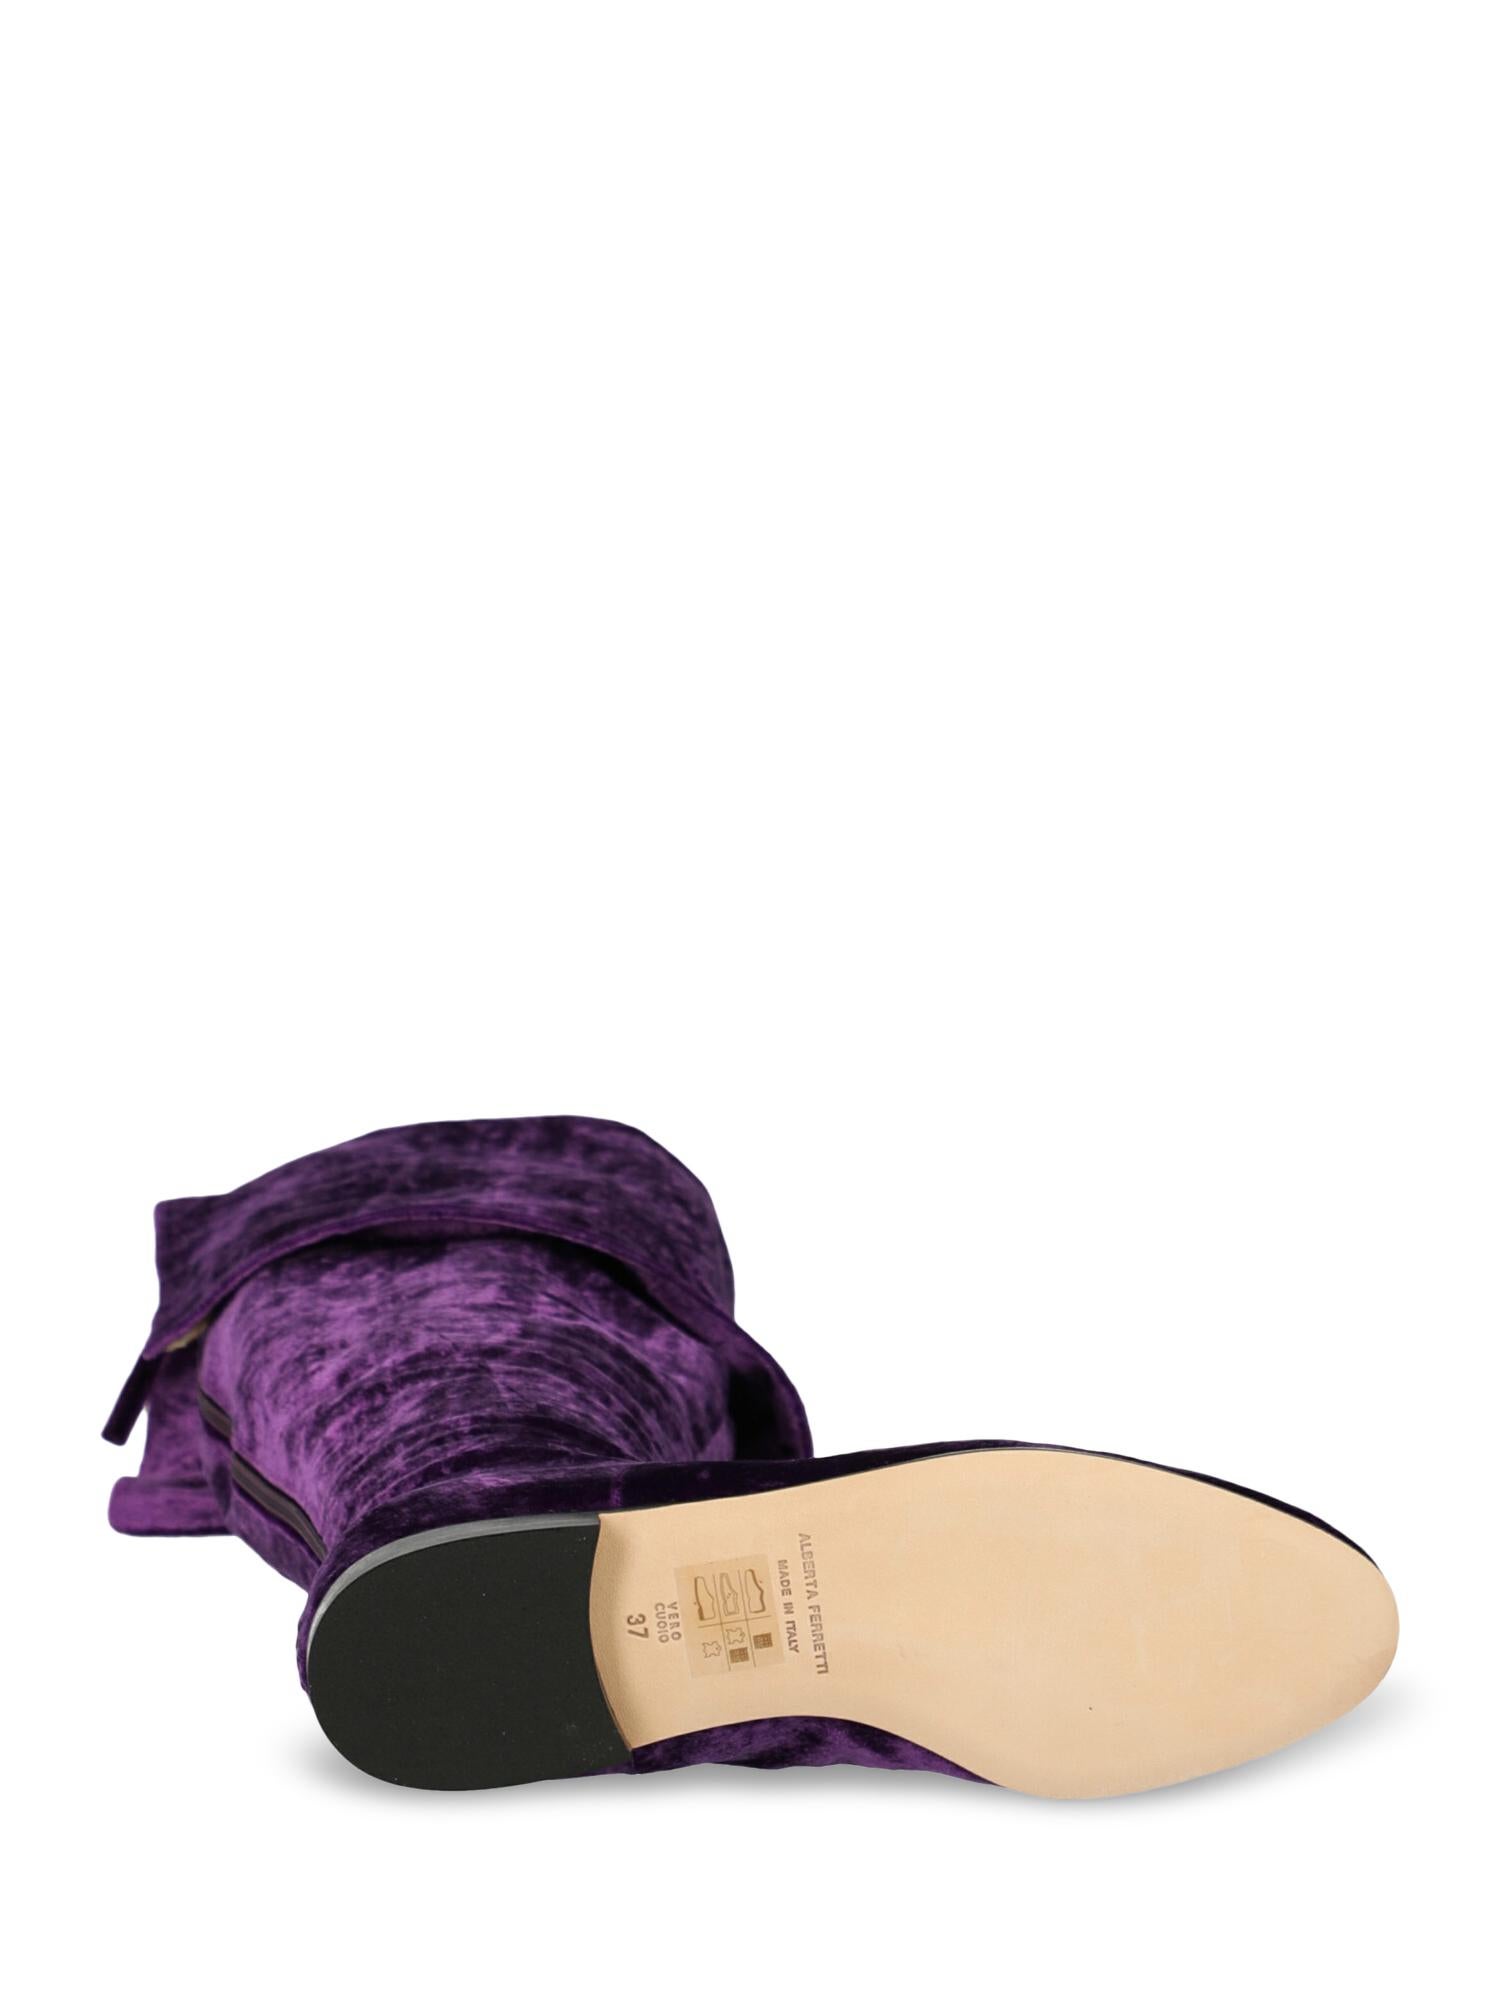 Alberta Ferretti Woman Boots Purple EU 36 In Excellent Condition For Sale In Milan, IT